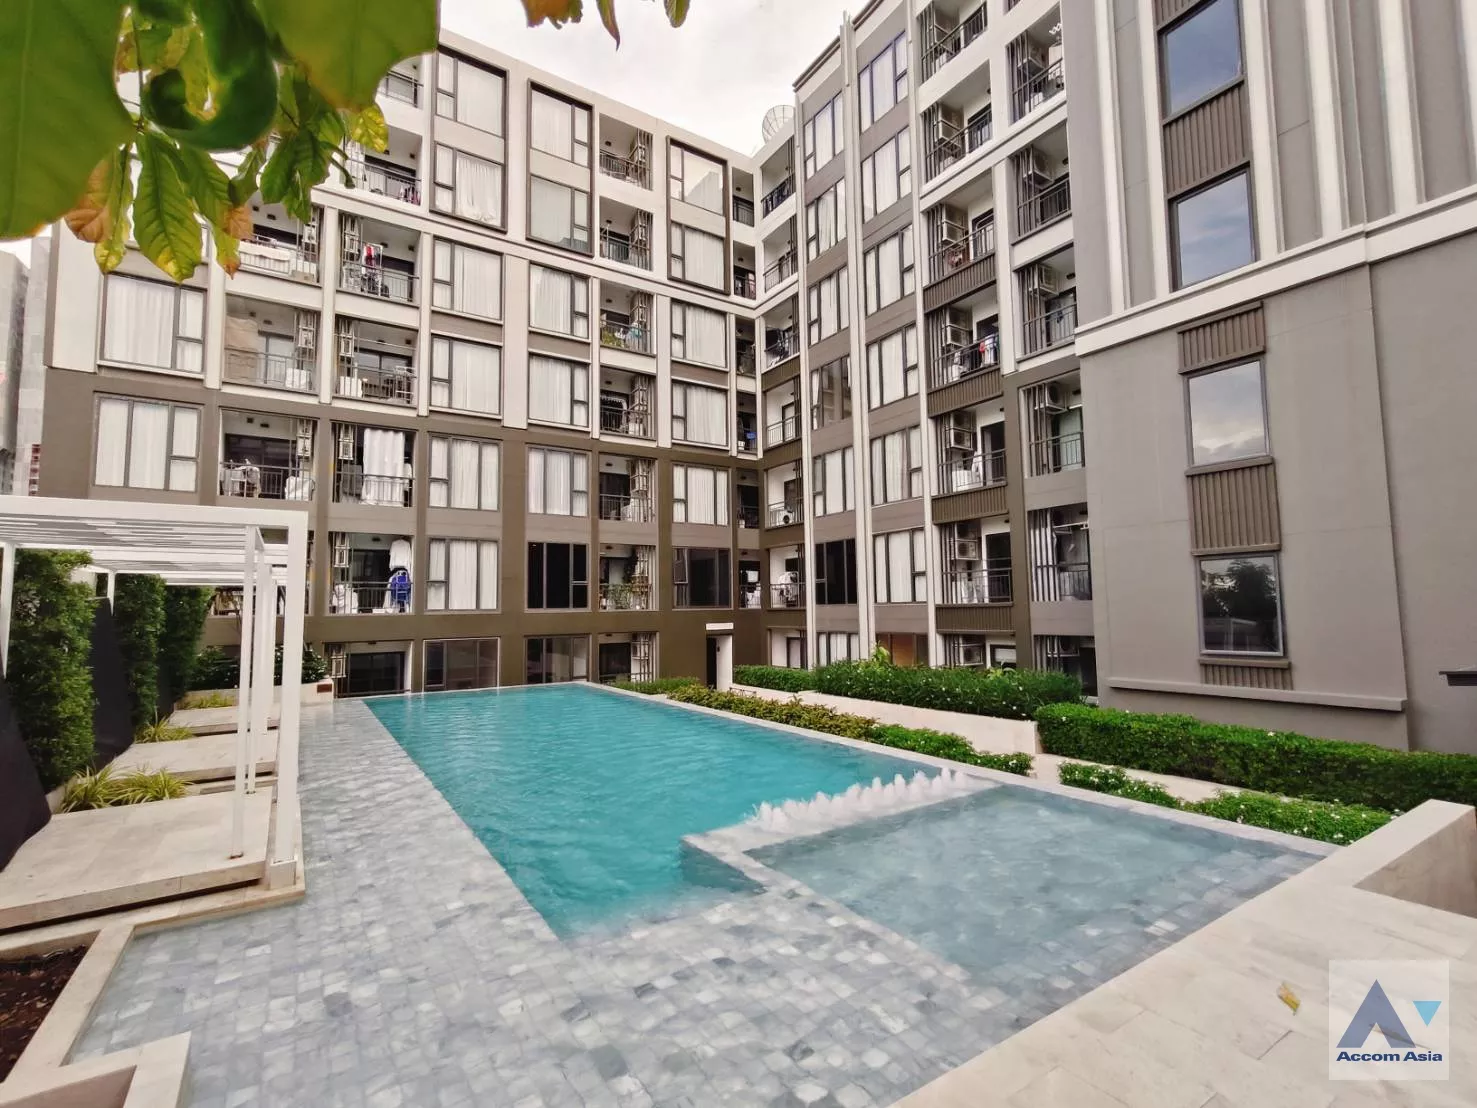  1 THE NEST Sukhumvit 64 - Condominium - Sukhumvit - Bangkok / Accomasia